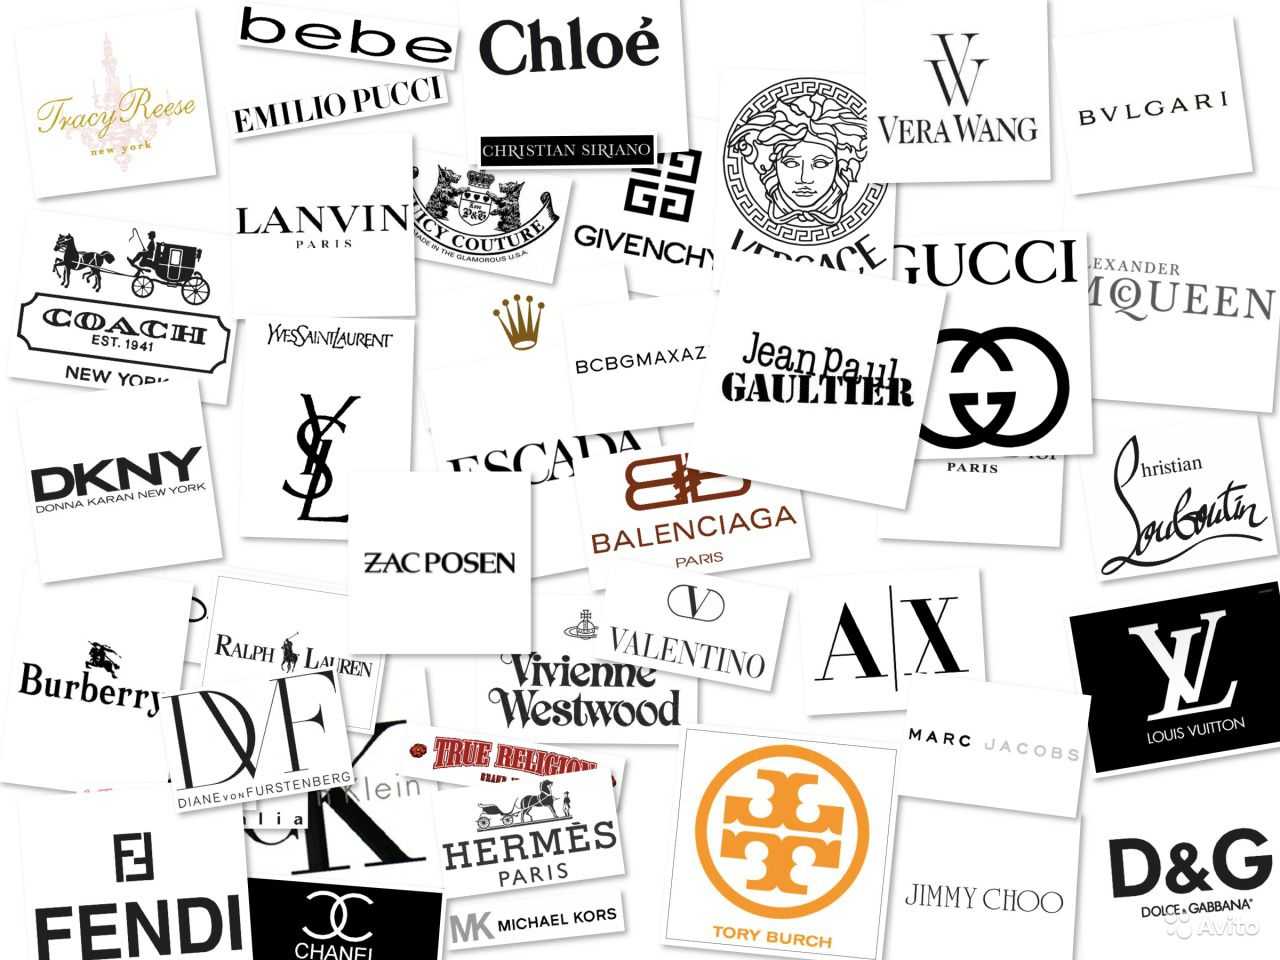 Обзор лучших мировых брендов одежды, особенности фирменной одежды